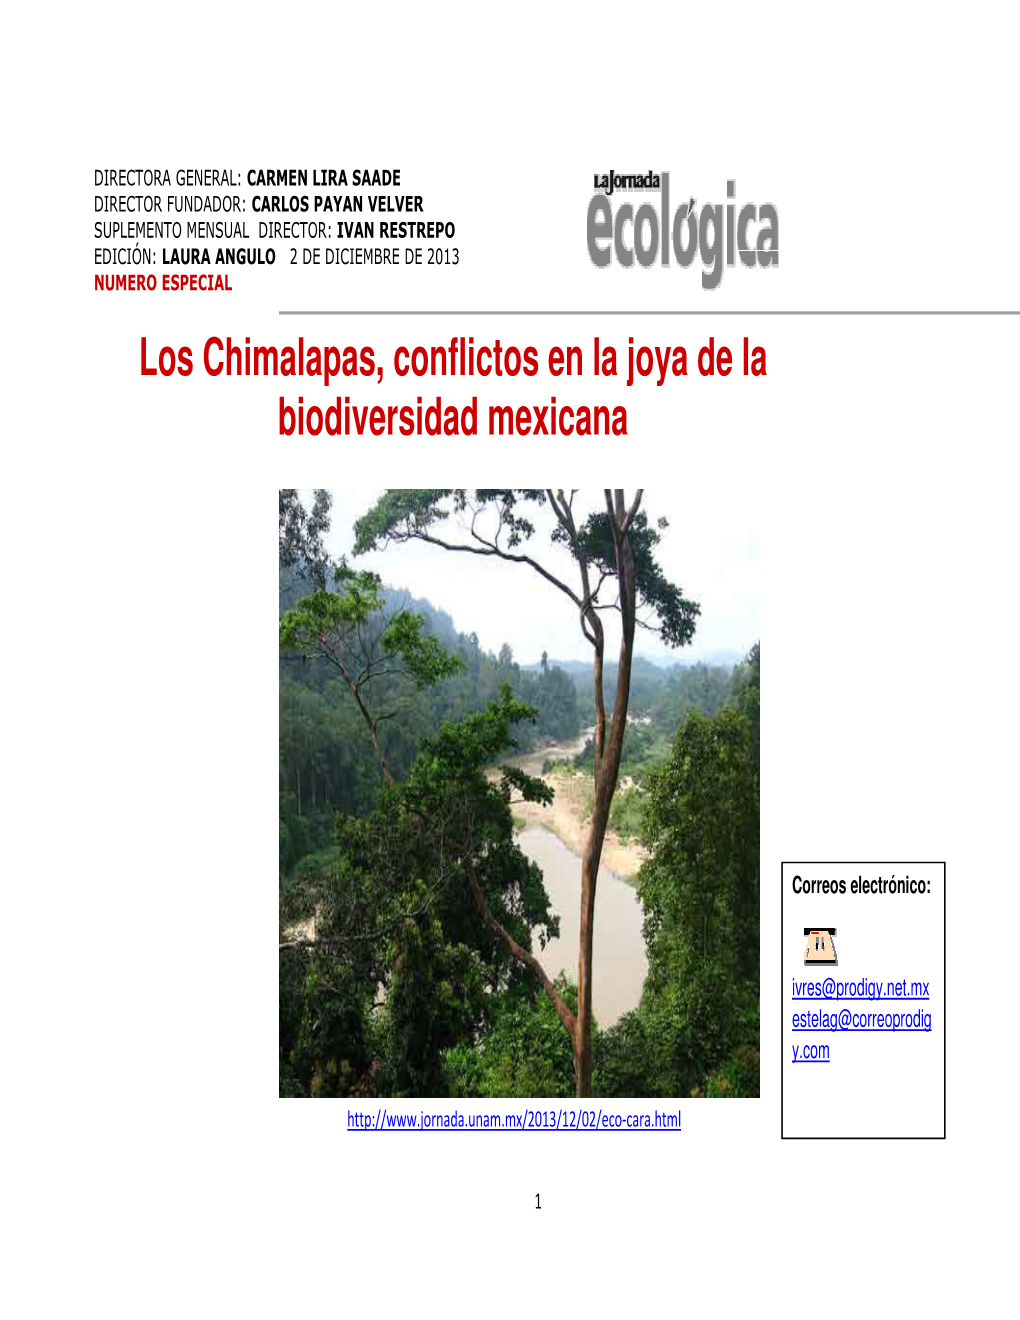 Los Chimalapas, Conflictos Biodiversidad Mex Imalapas, Conflictos En La Joya De La Biodiversidad Mexicana Joya De La